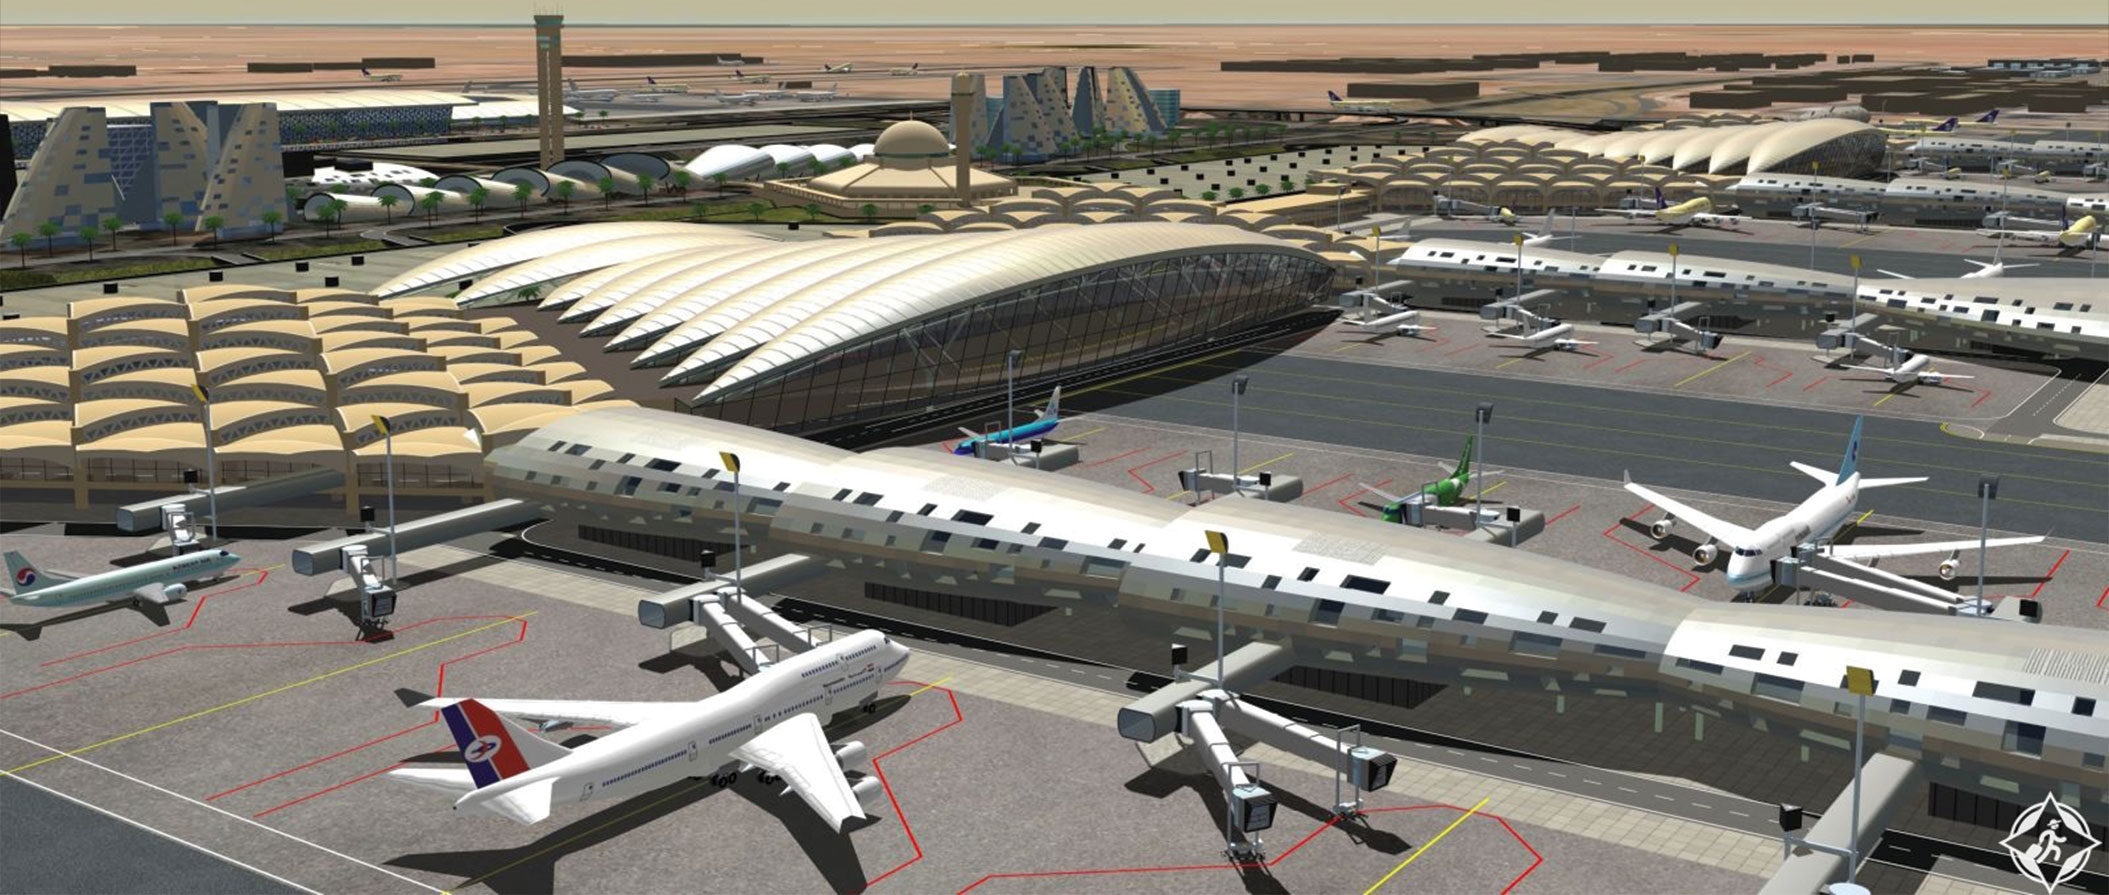 Qiadaa security in air-port